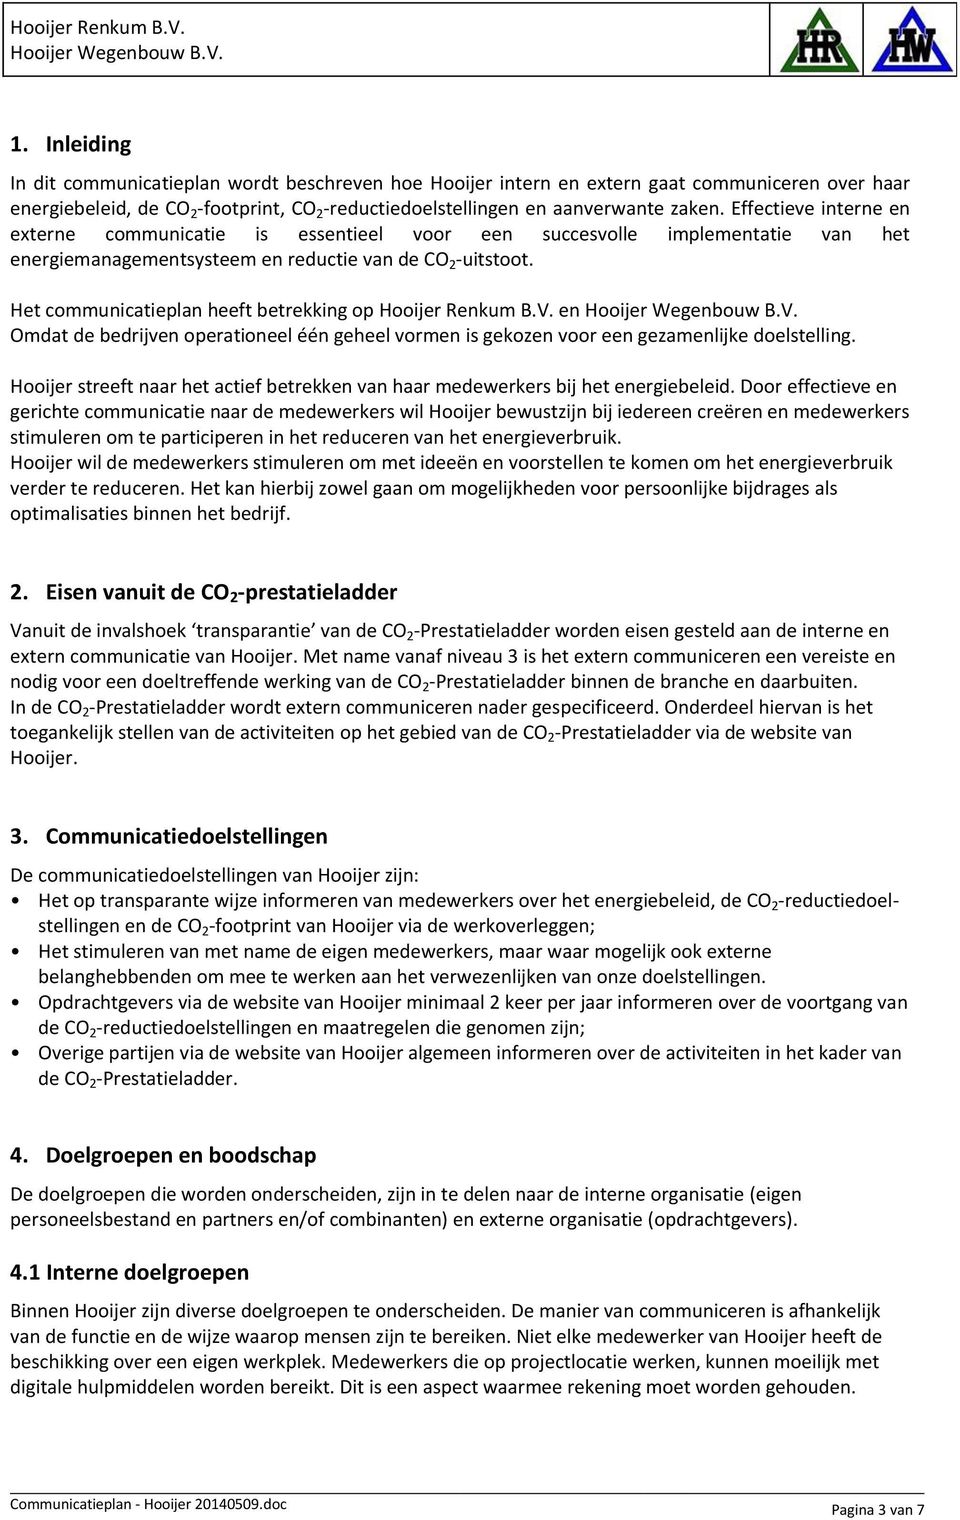 Het communicatieplan heeft betrekking op Hooijer Renkum B.V. en Omdat de bedrijven operationeel één geheel vormen is gekozen voor een gezamenlijke doelstelling.